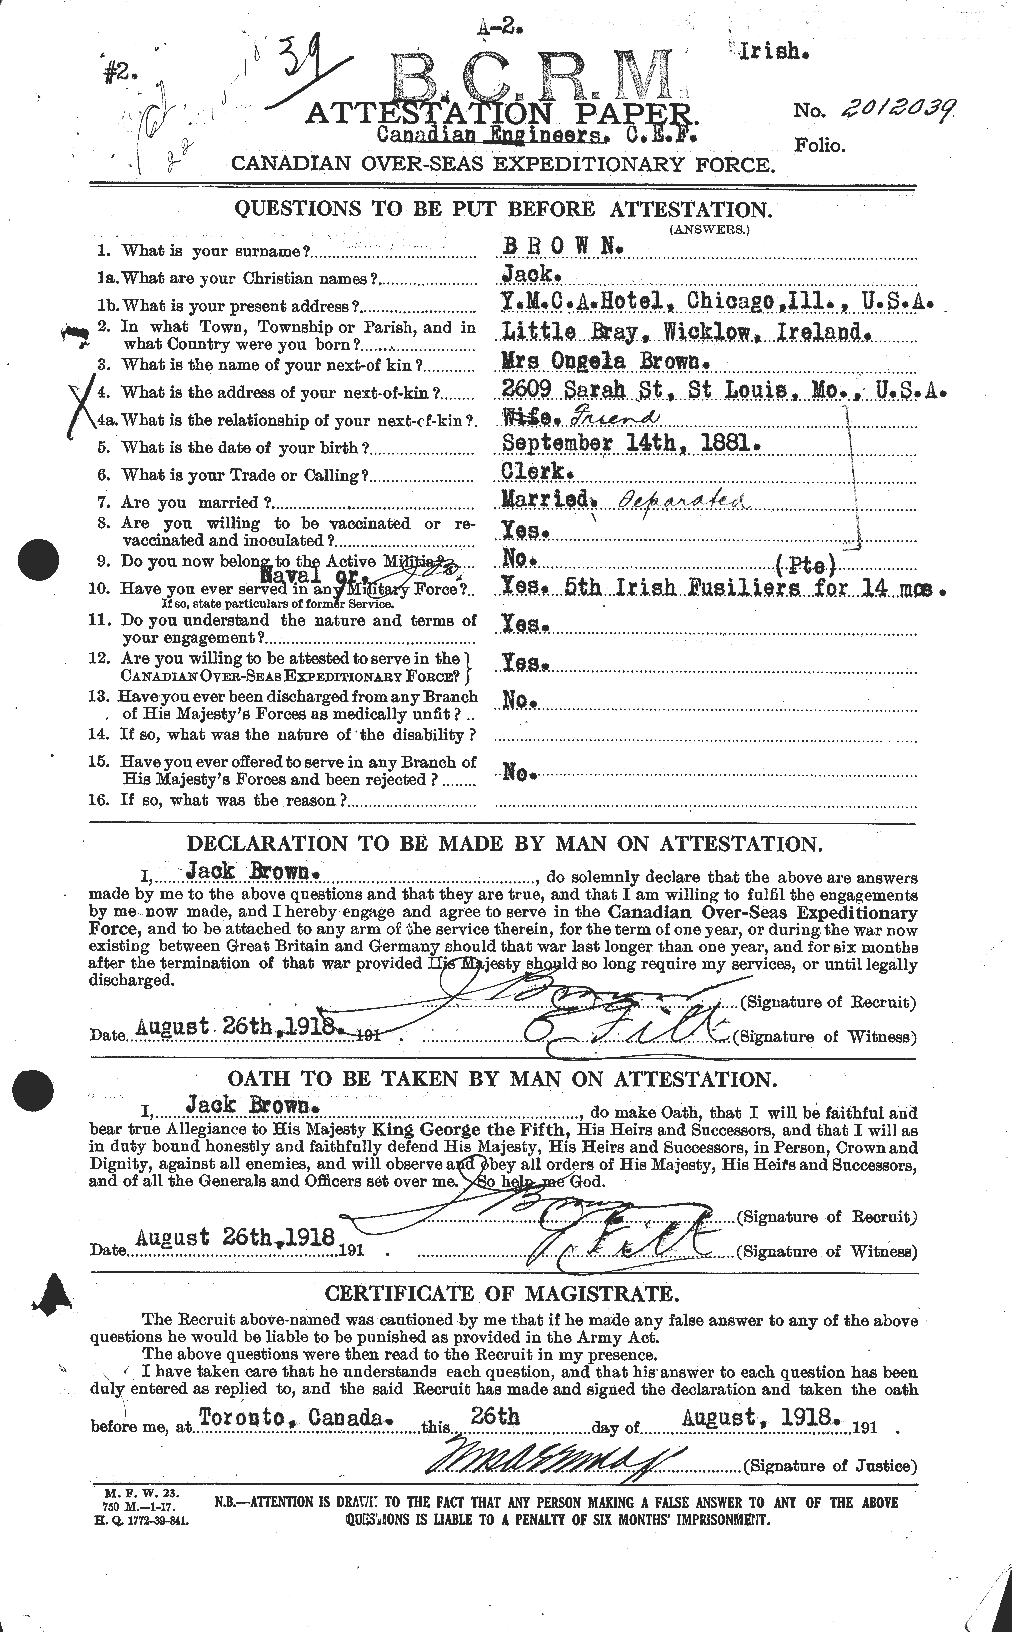 Dossiers du Personnel de la Première Guerre mondiale - CEC 269716a